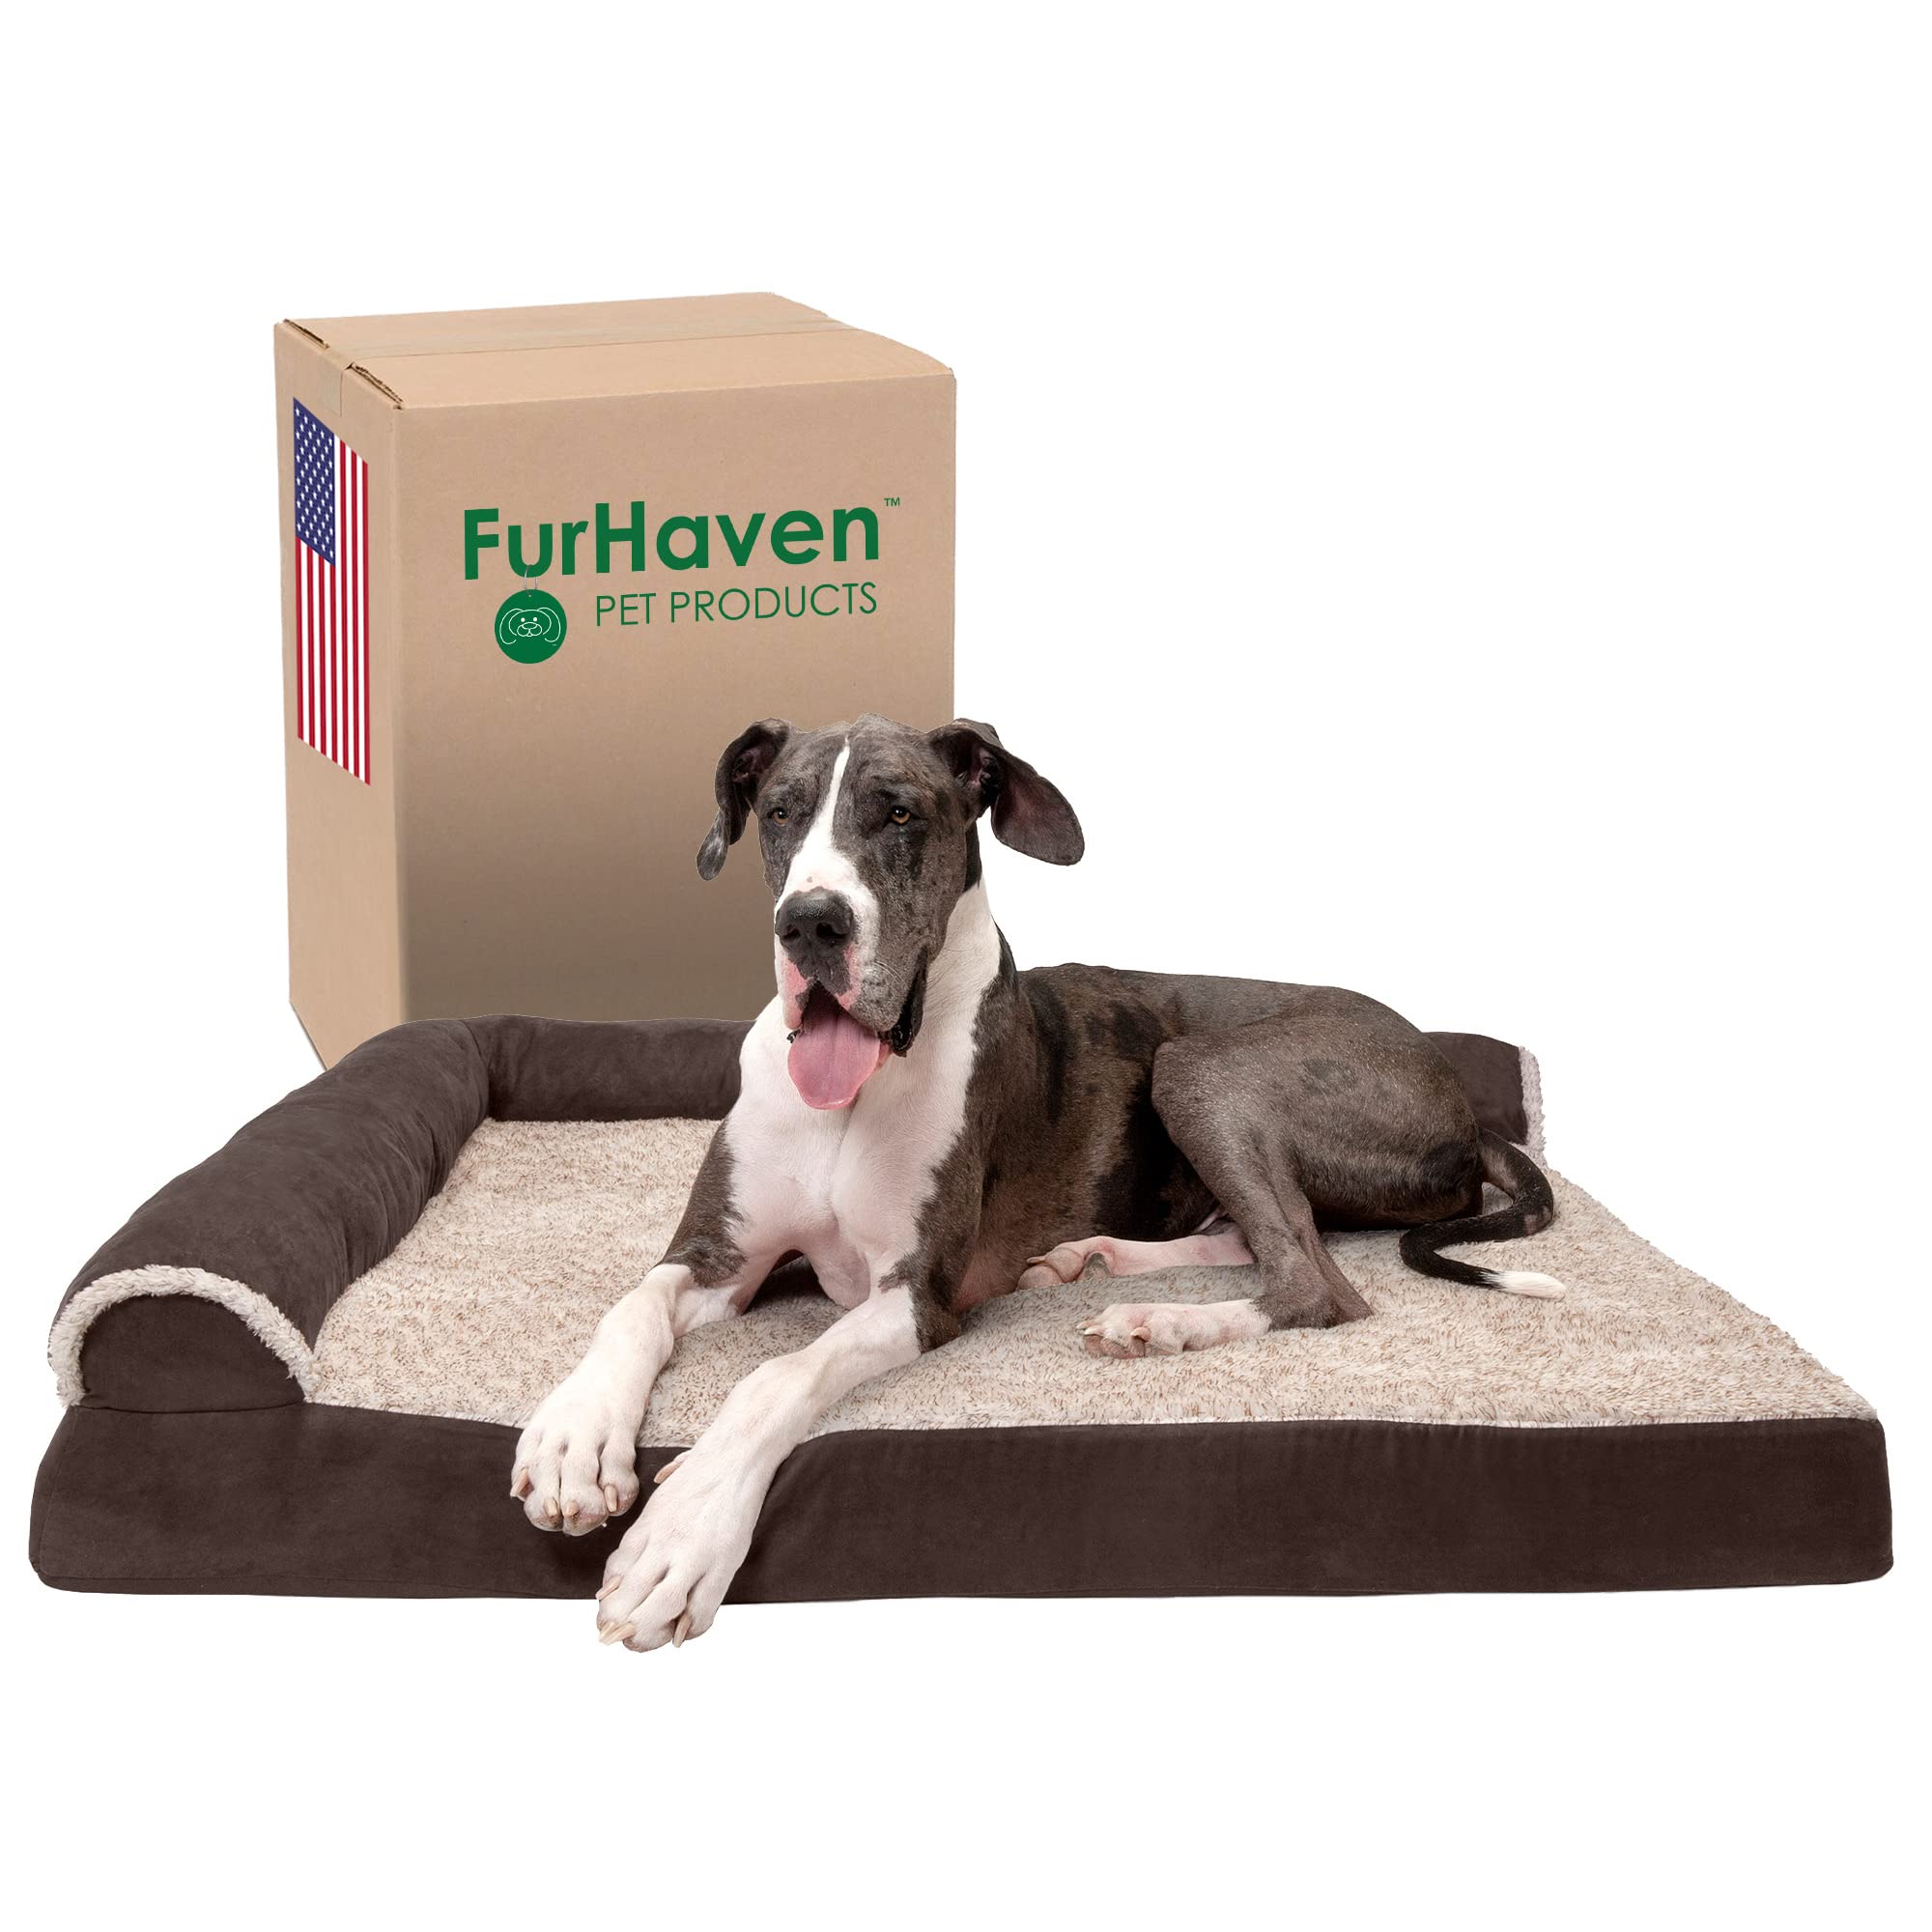  Furhaven 大型犬用整形外科用犬用ベッド 取り外し可能なボルスターと洗えるカバー付き、体重125ポンドまでの犬用 - ツートンカラーの豪華なフェイク...